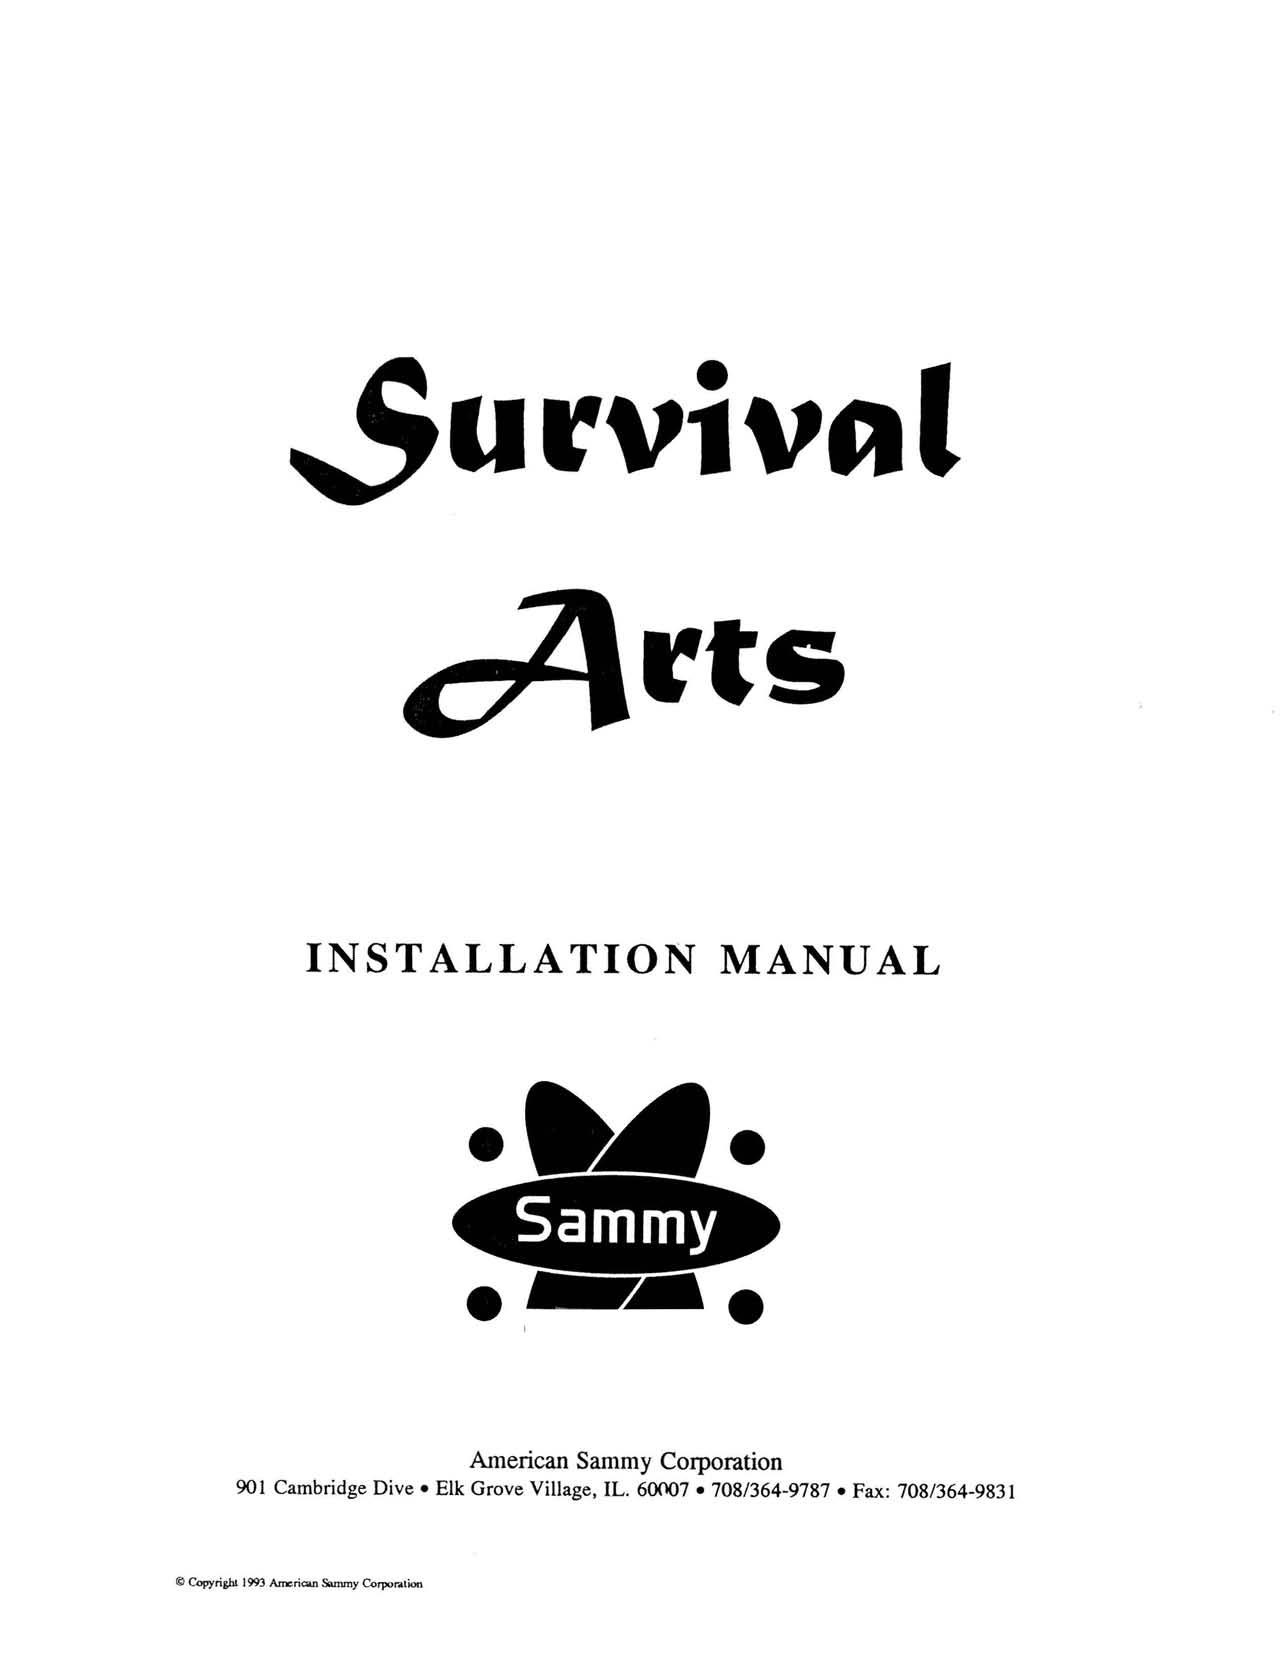 Survival Arts